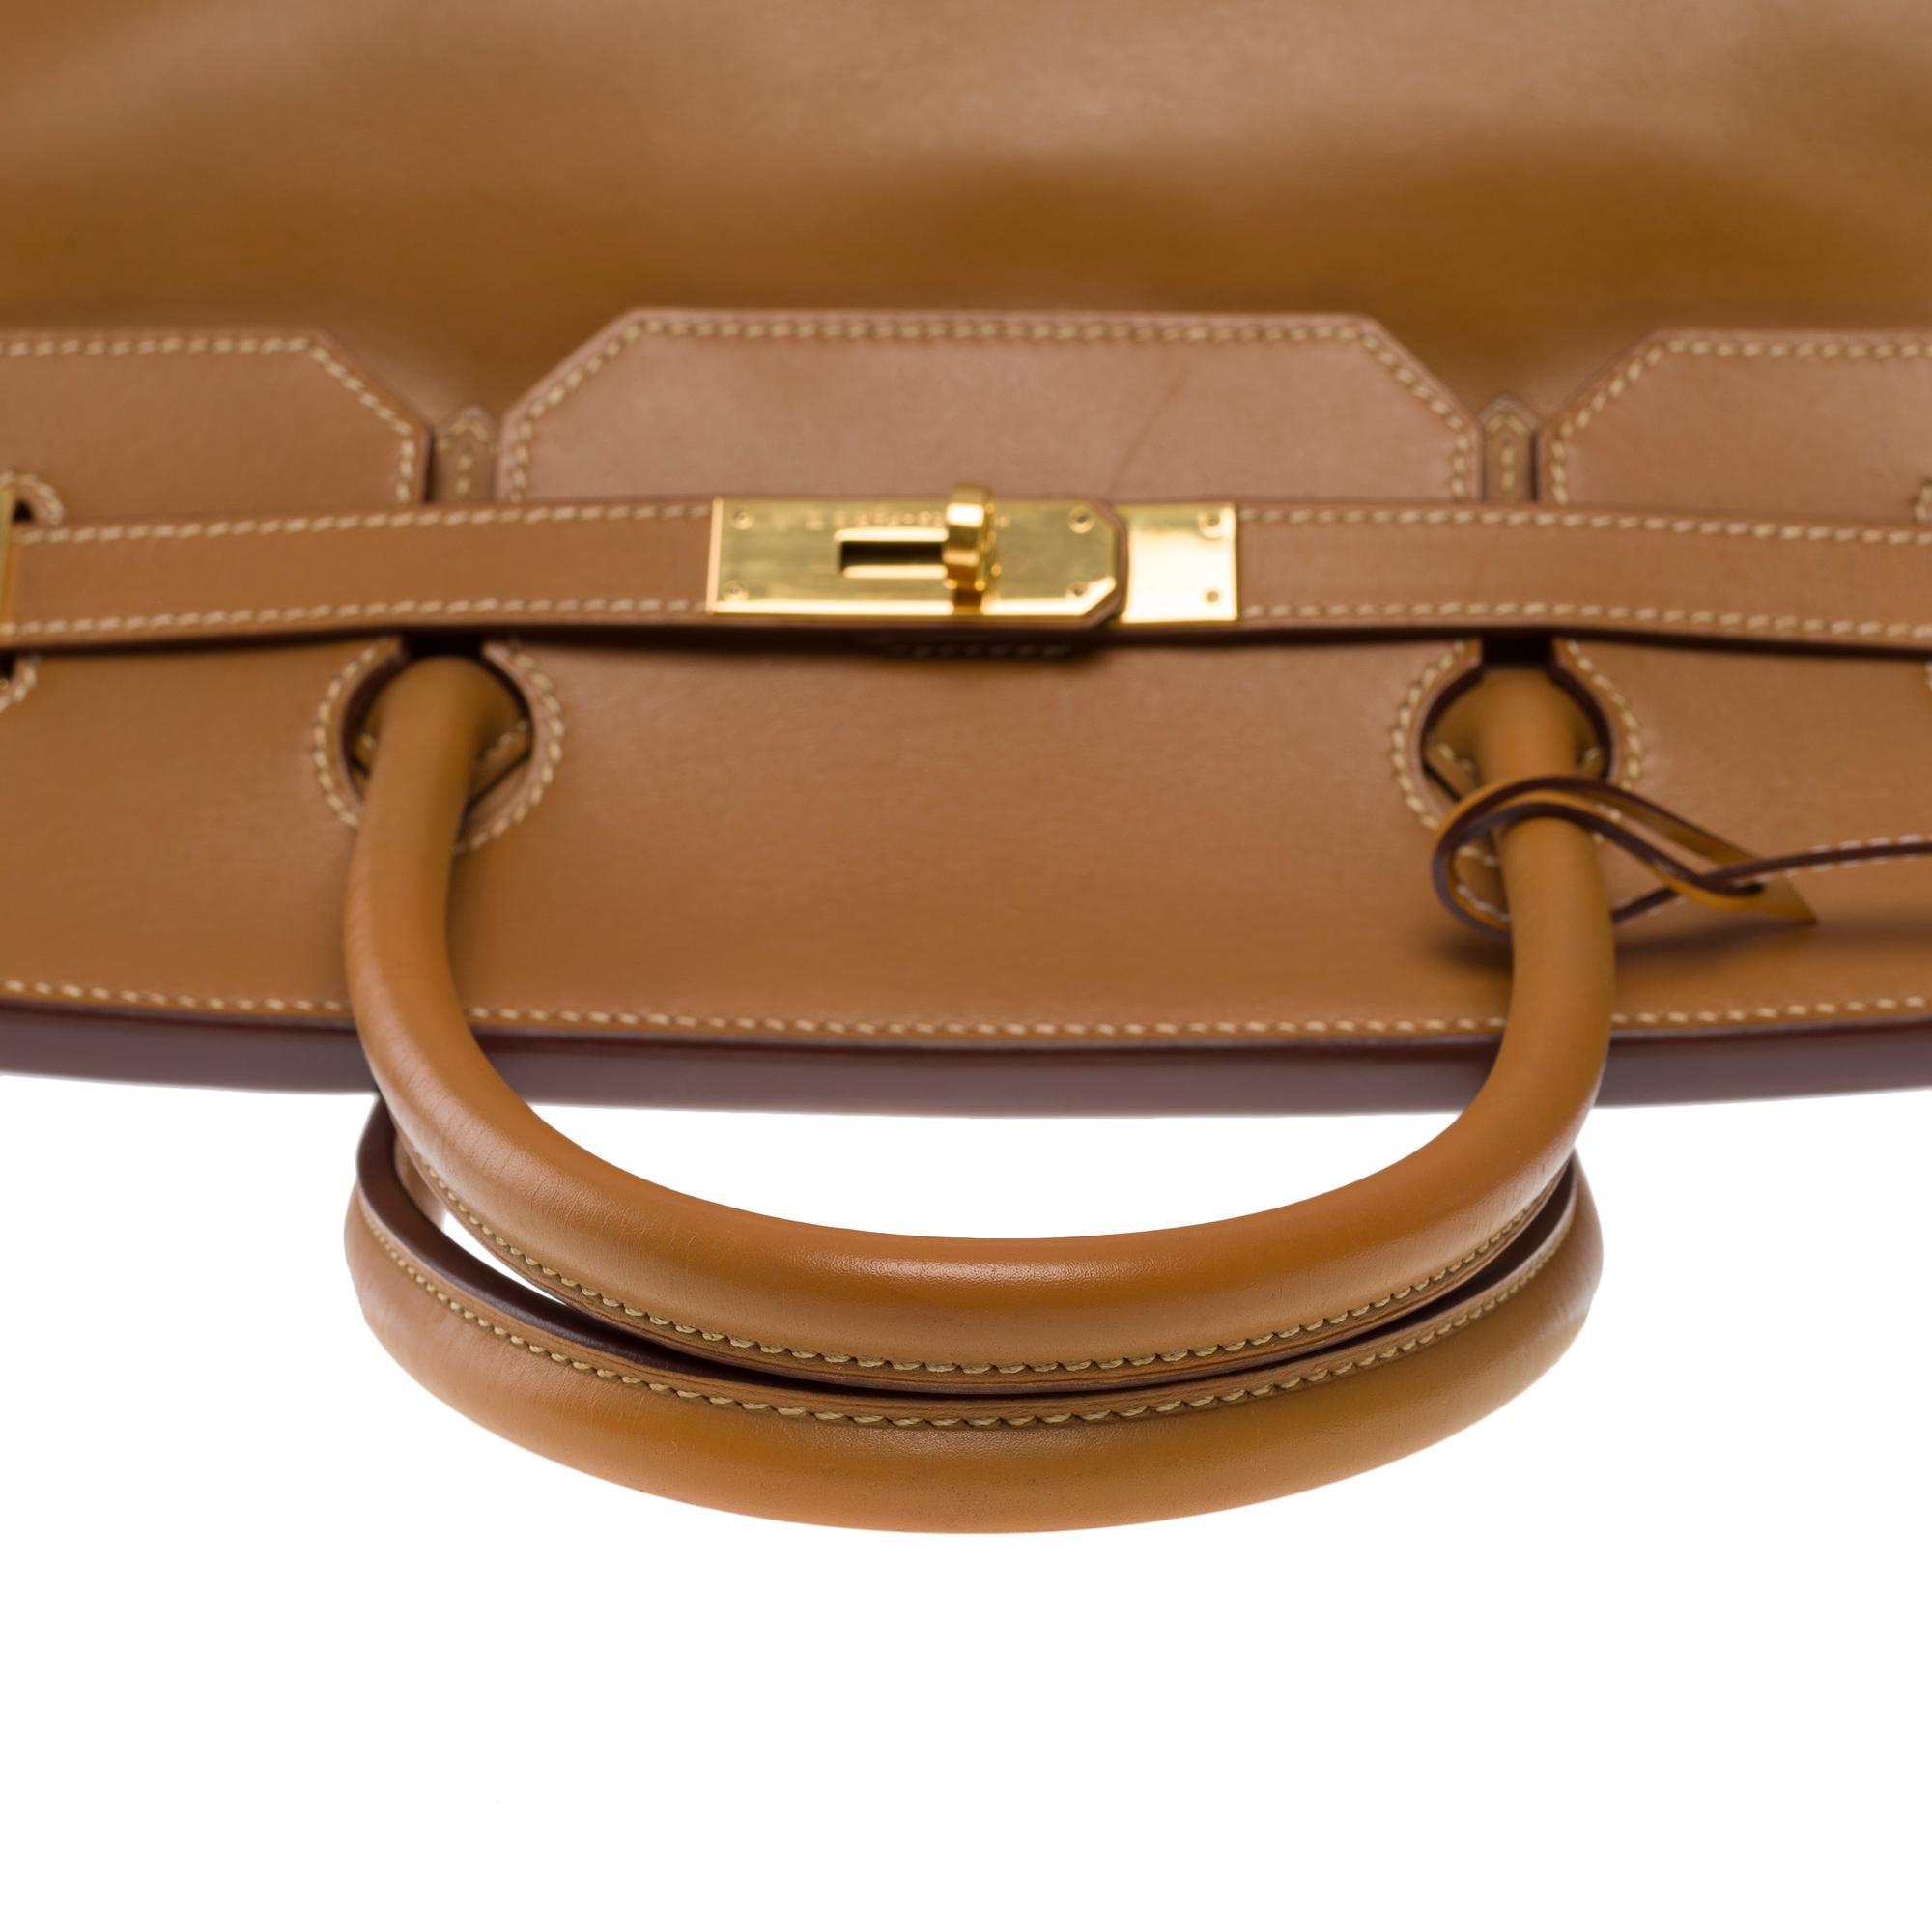 Fantastic Hermes Birkin 40 handbag in Camel (Gold) Chamonix leather, GHW For Sale 4